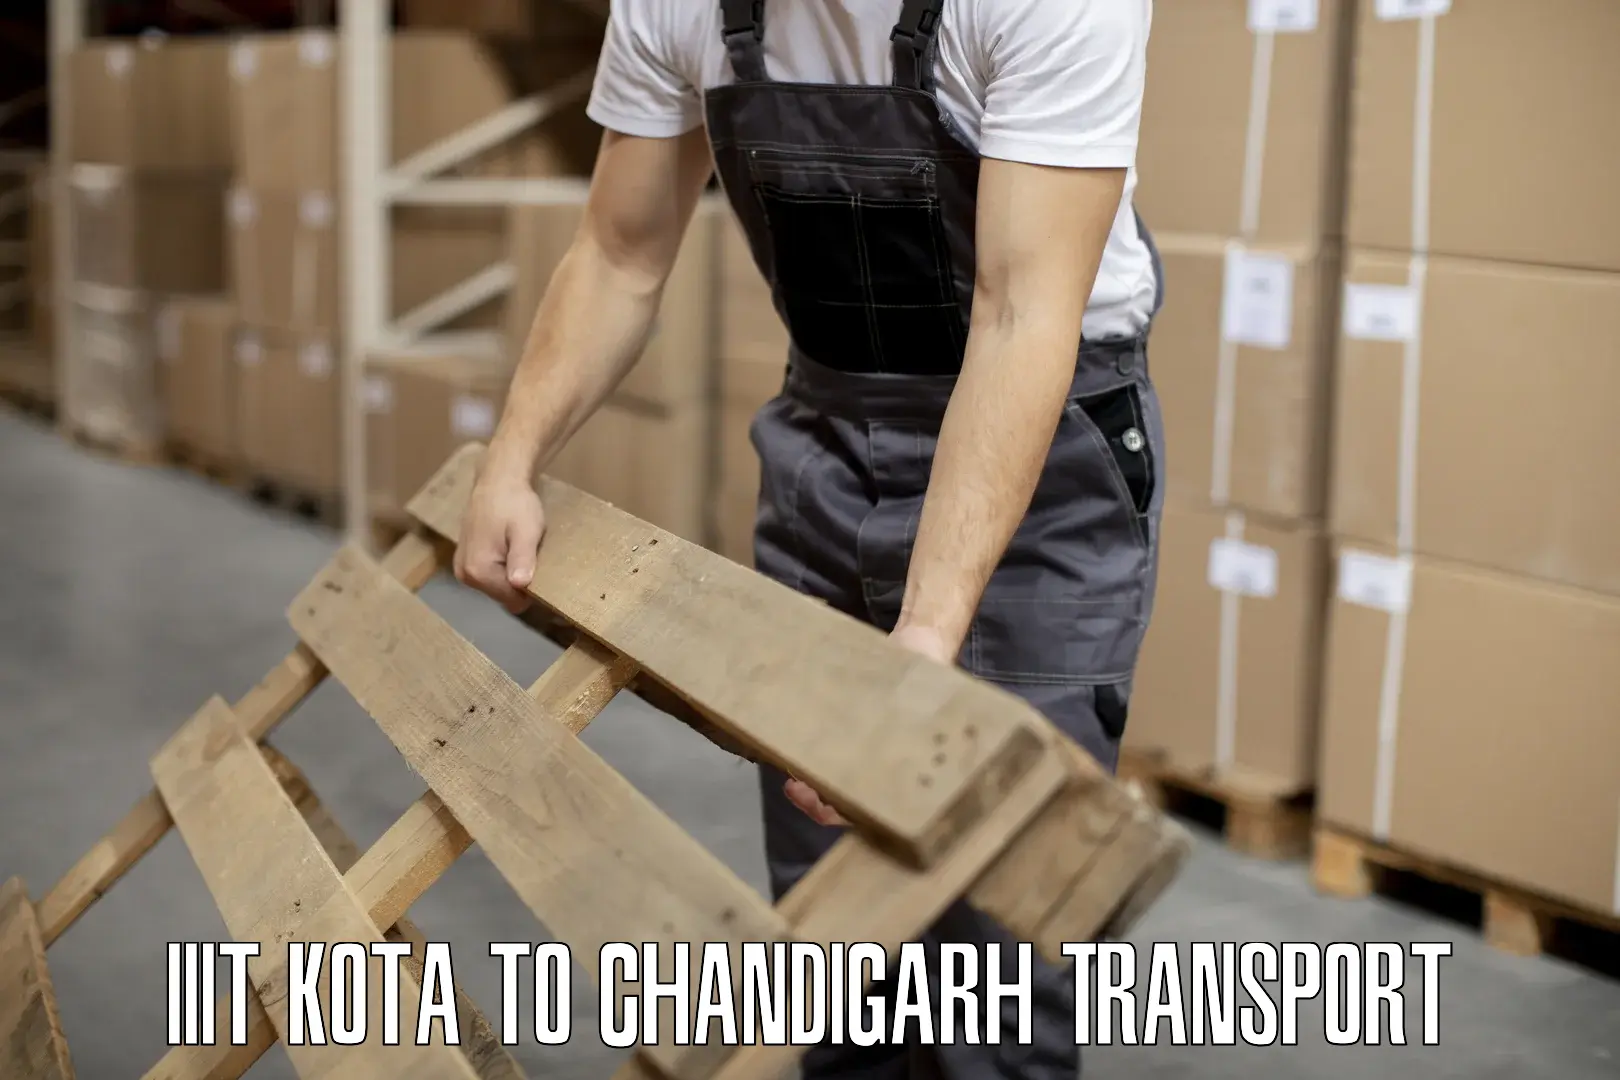 Online transport IIIT Kota to Chandigarh